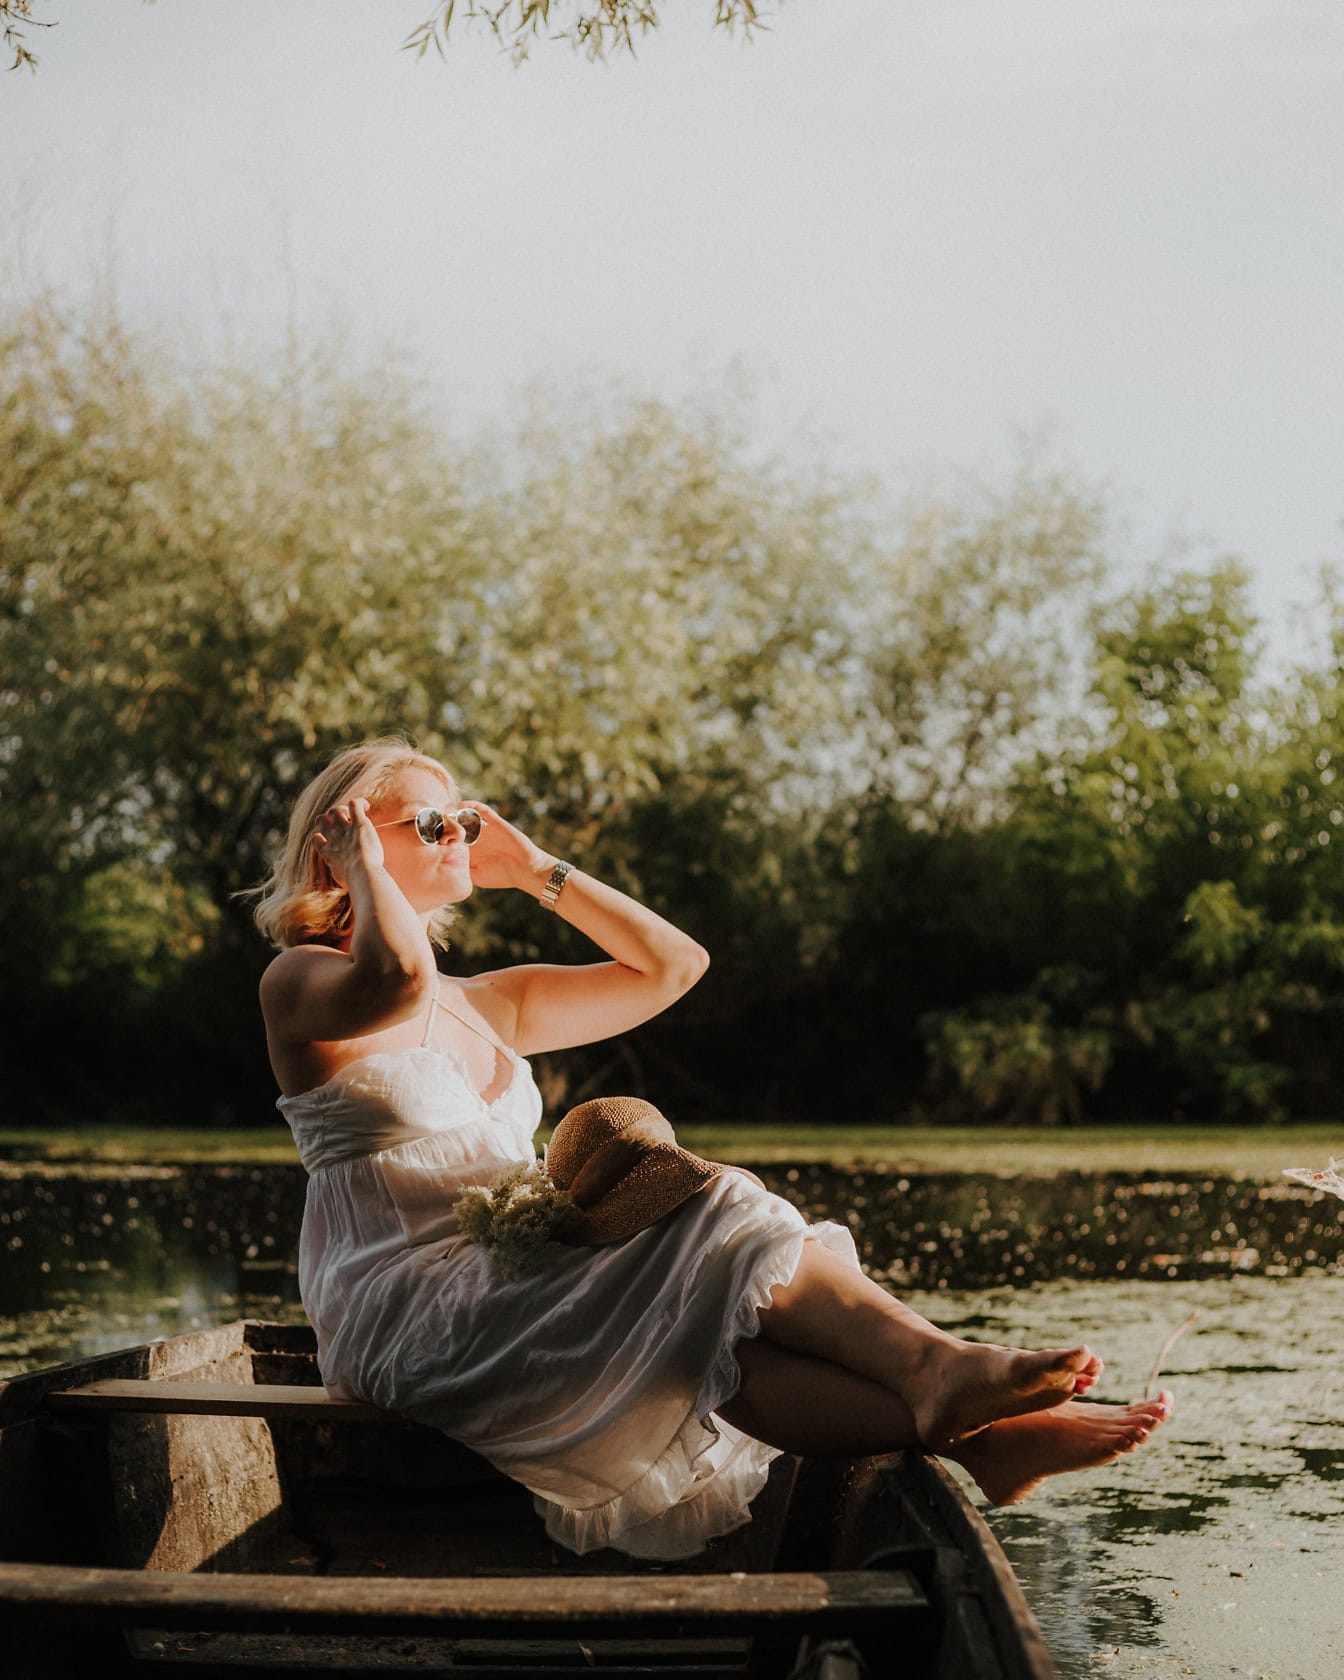 Loira bonita senta-se em um barco de madeira em um vestido branco e banhos de sol